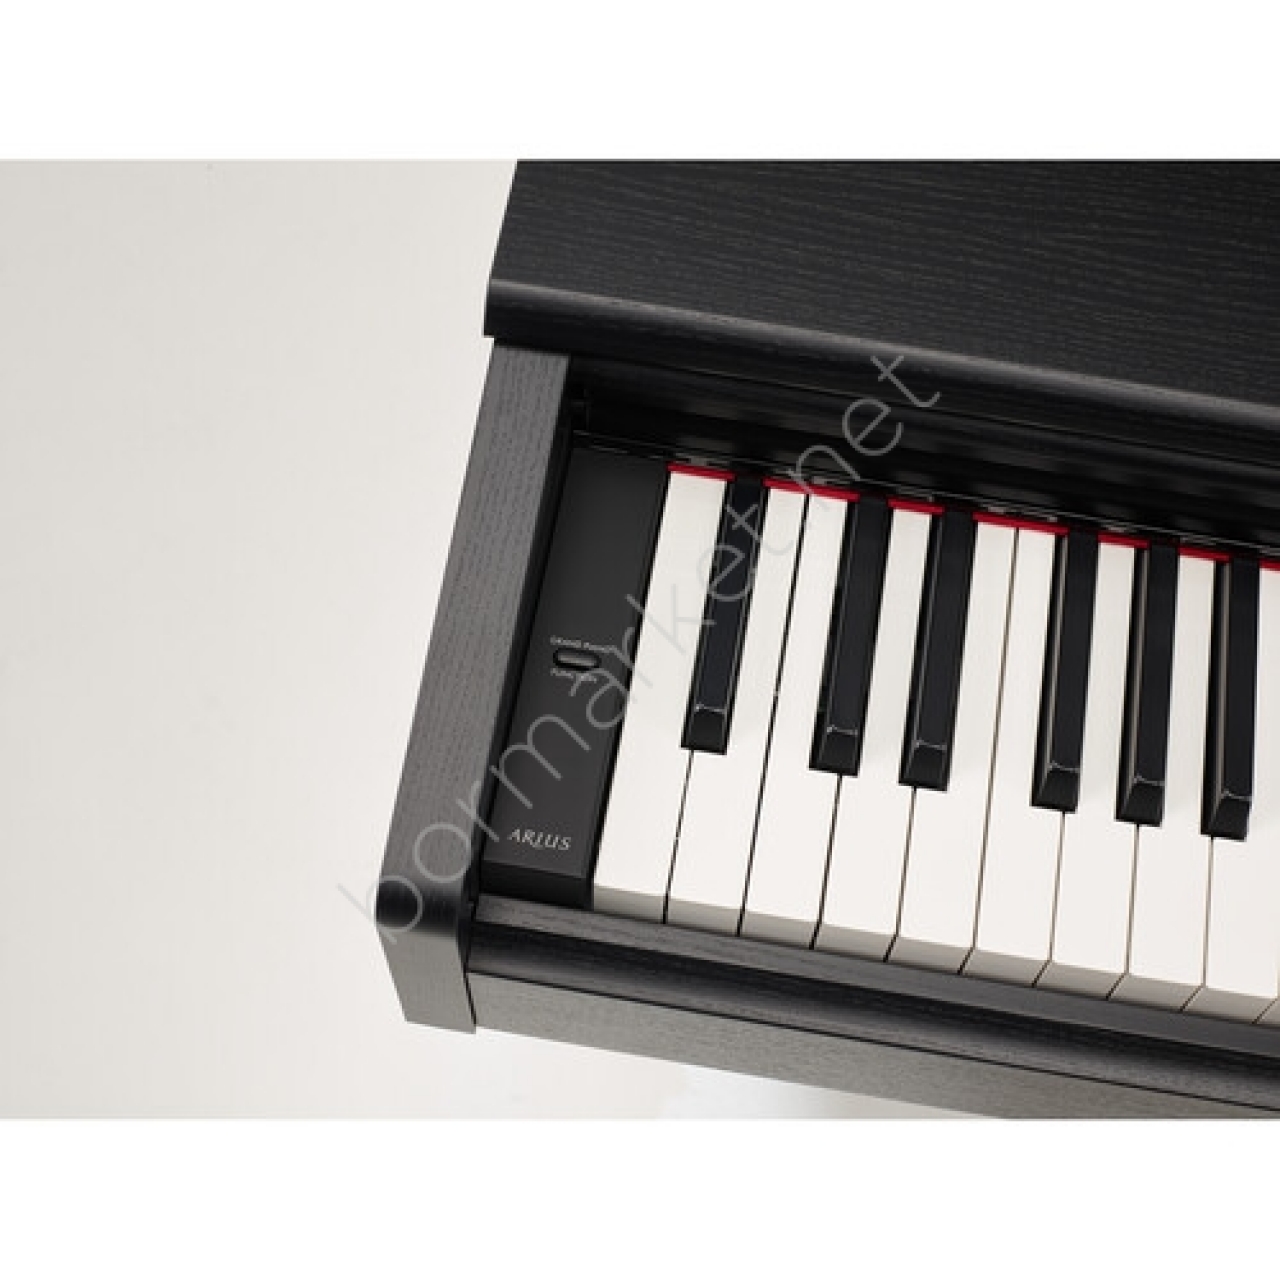 Yamaha ARIUS YDP-105R Dijital Piyano (Gülağacı)